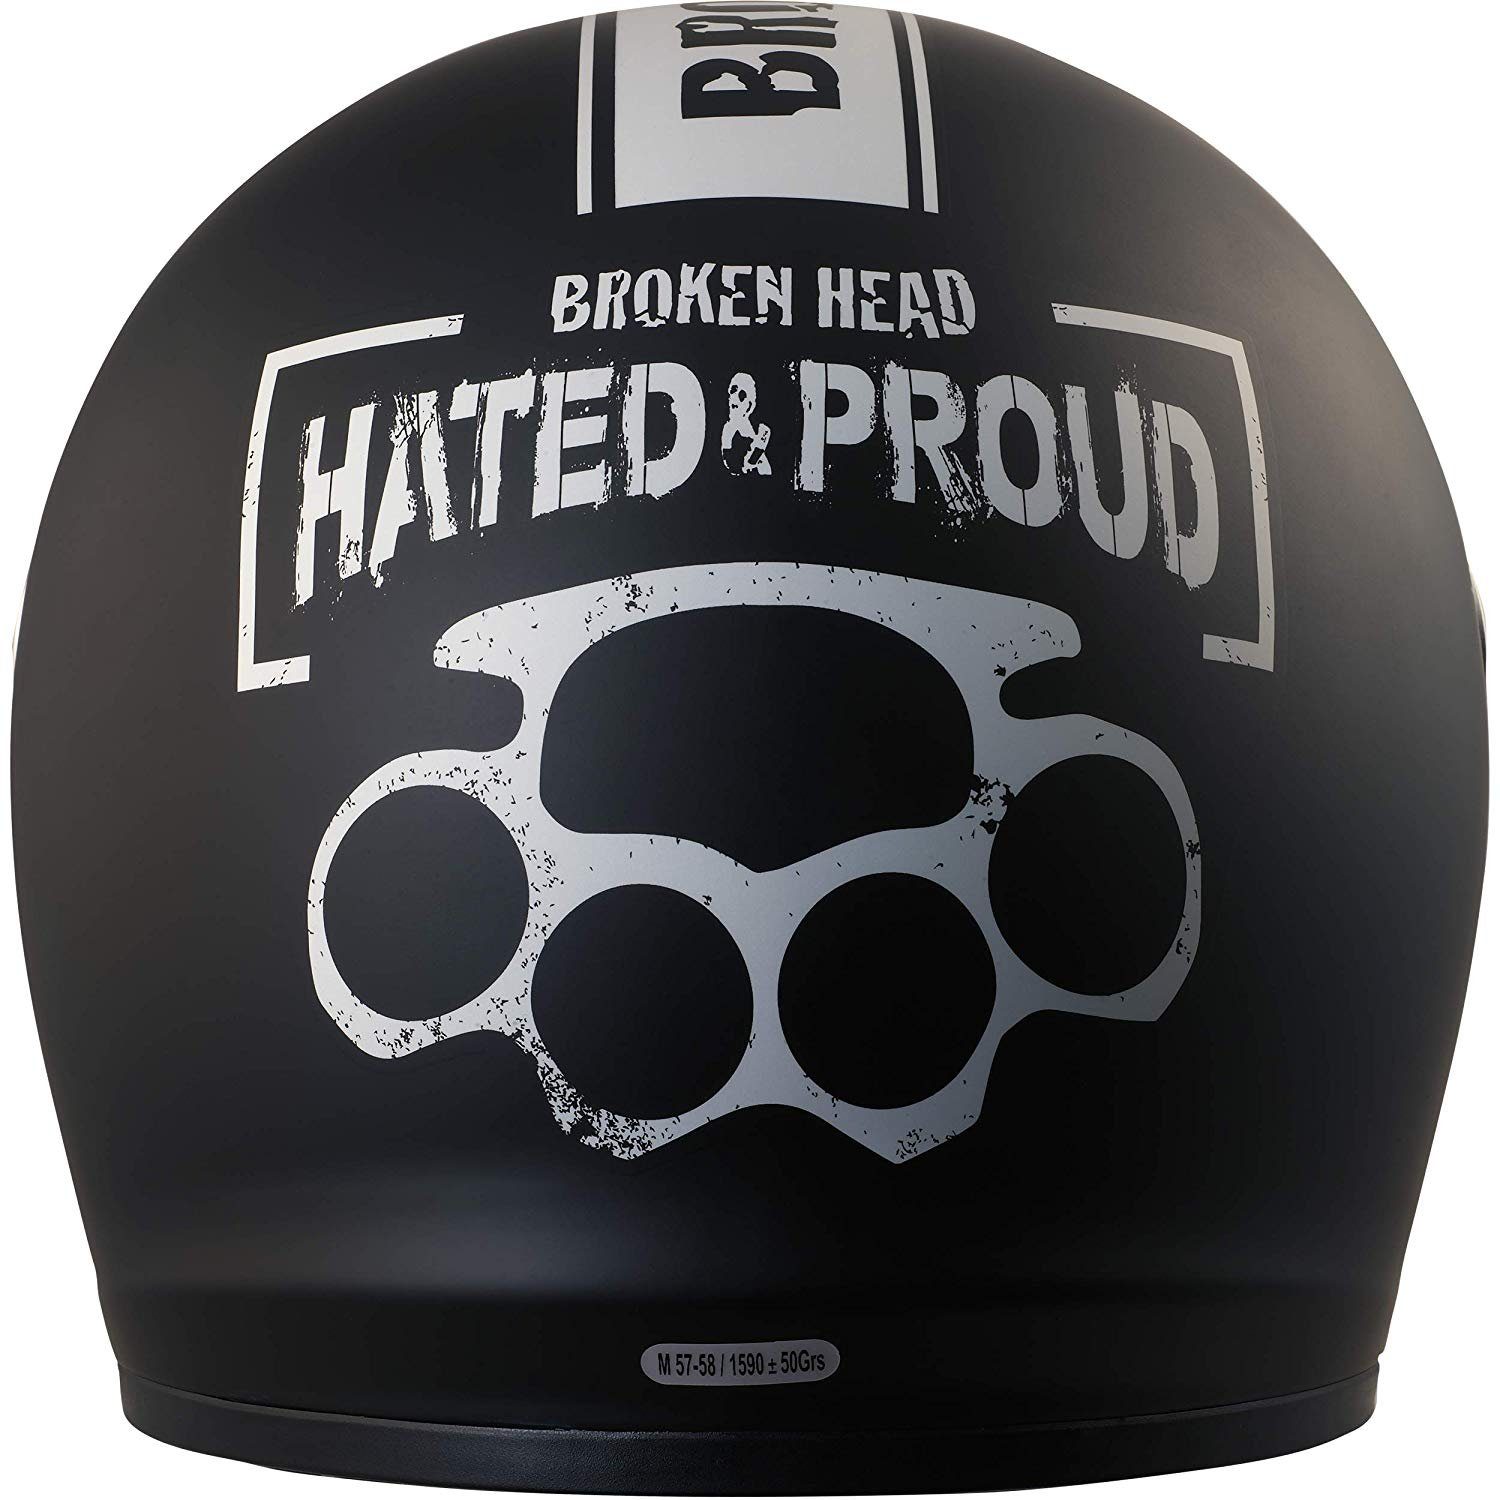 Visier klarem schwarzem (mit inklusiv inkl. schwarzem Head Motorradhelm Proud Broken Hated Visier & schwarzem Visier), und